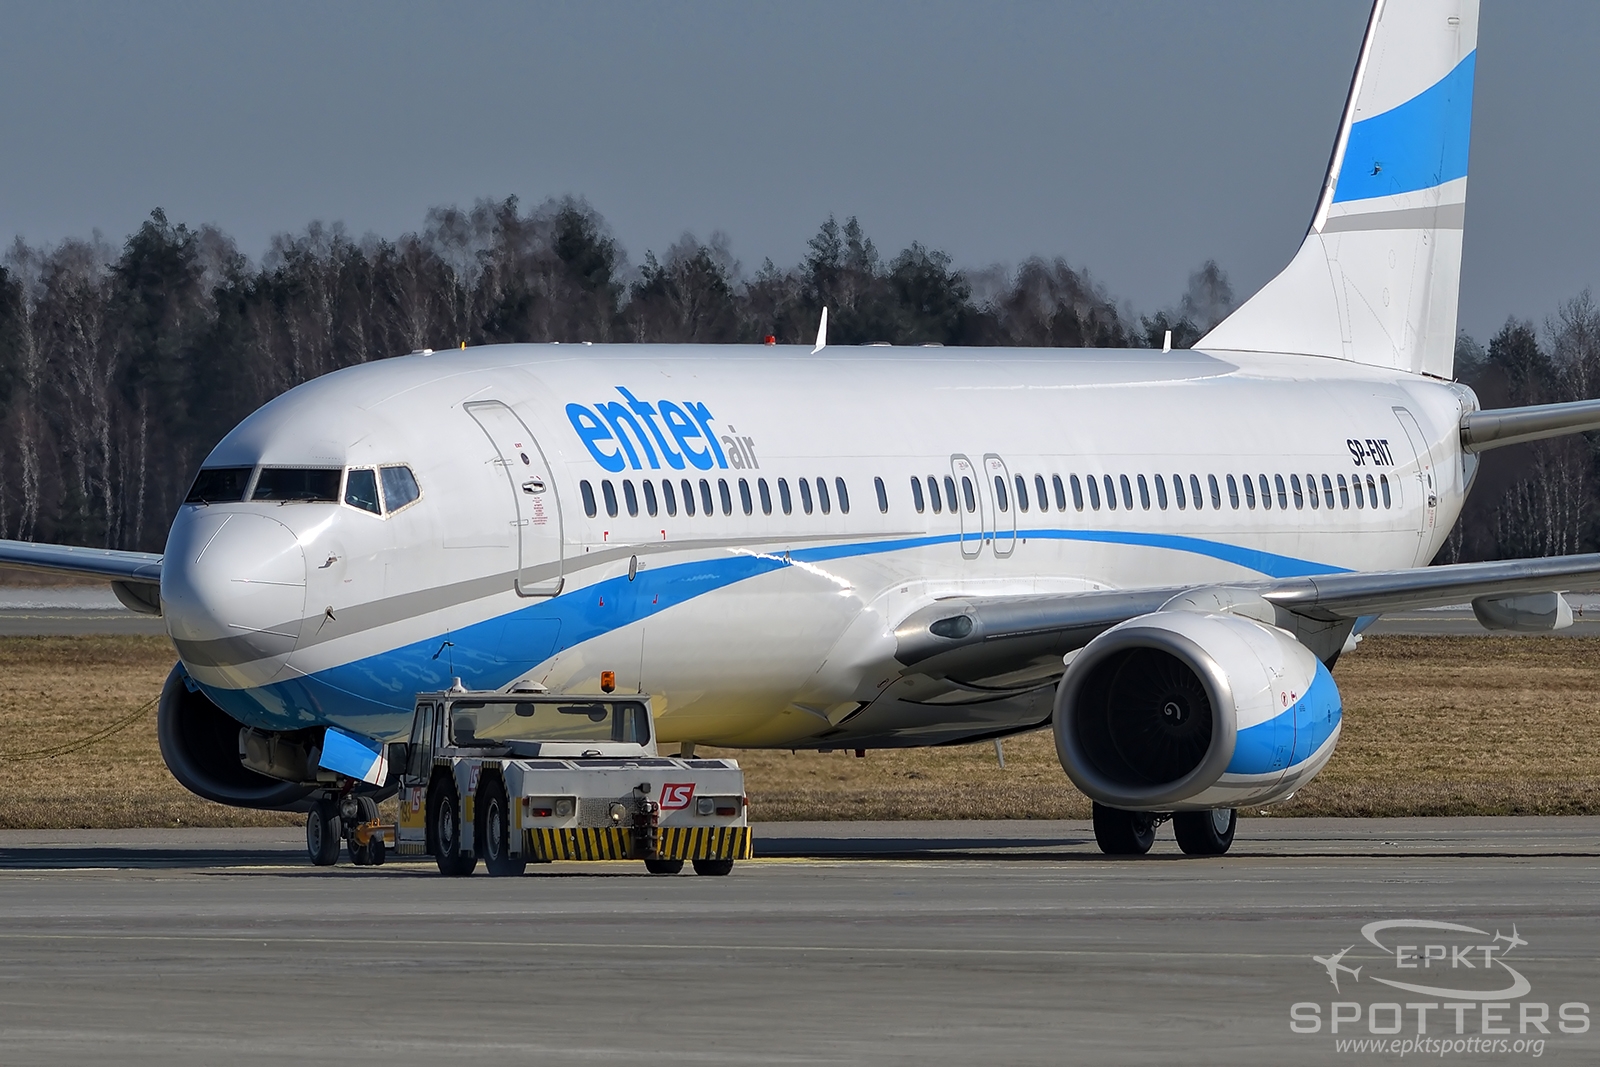 SP-ENT - Boeing 737 -8AS (EnterAir) / Pyrzowice - Katowice Poland [EPKT/KTW]